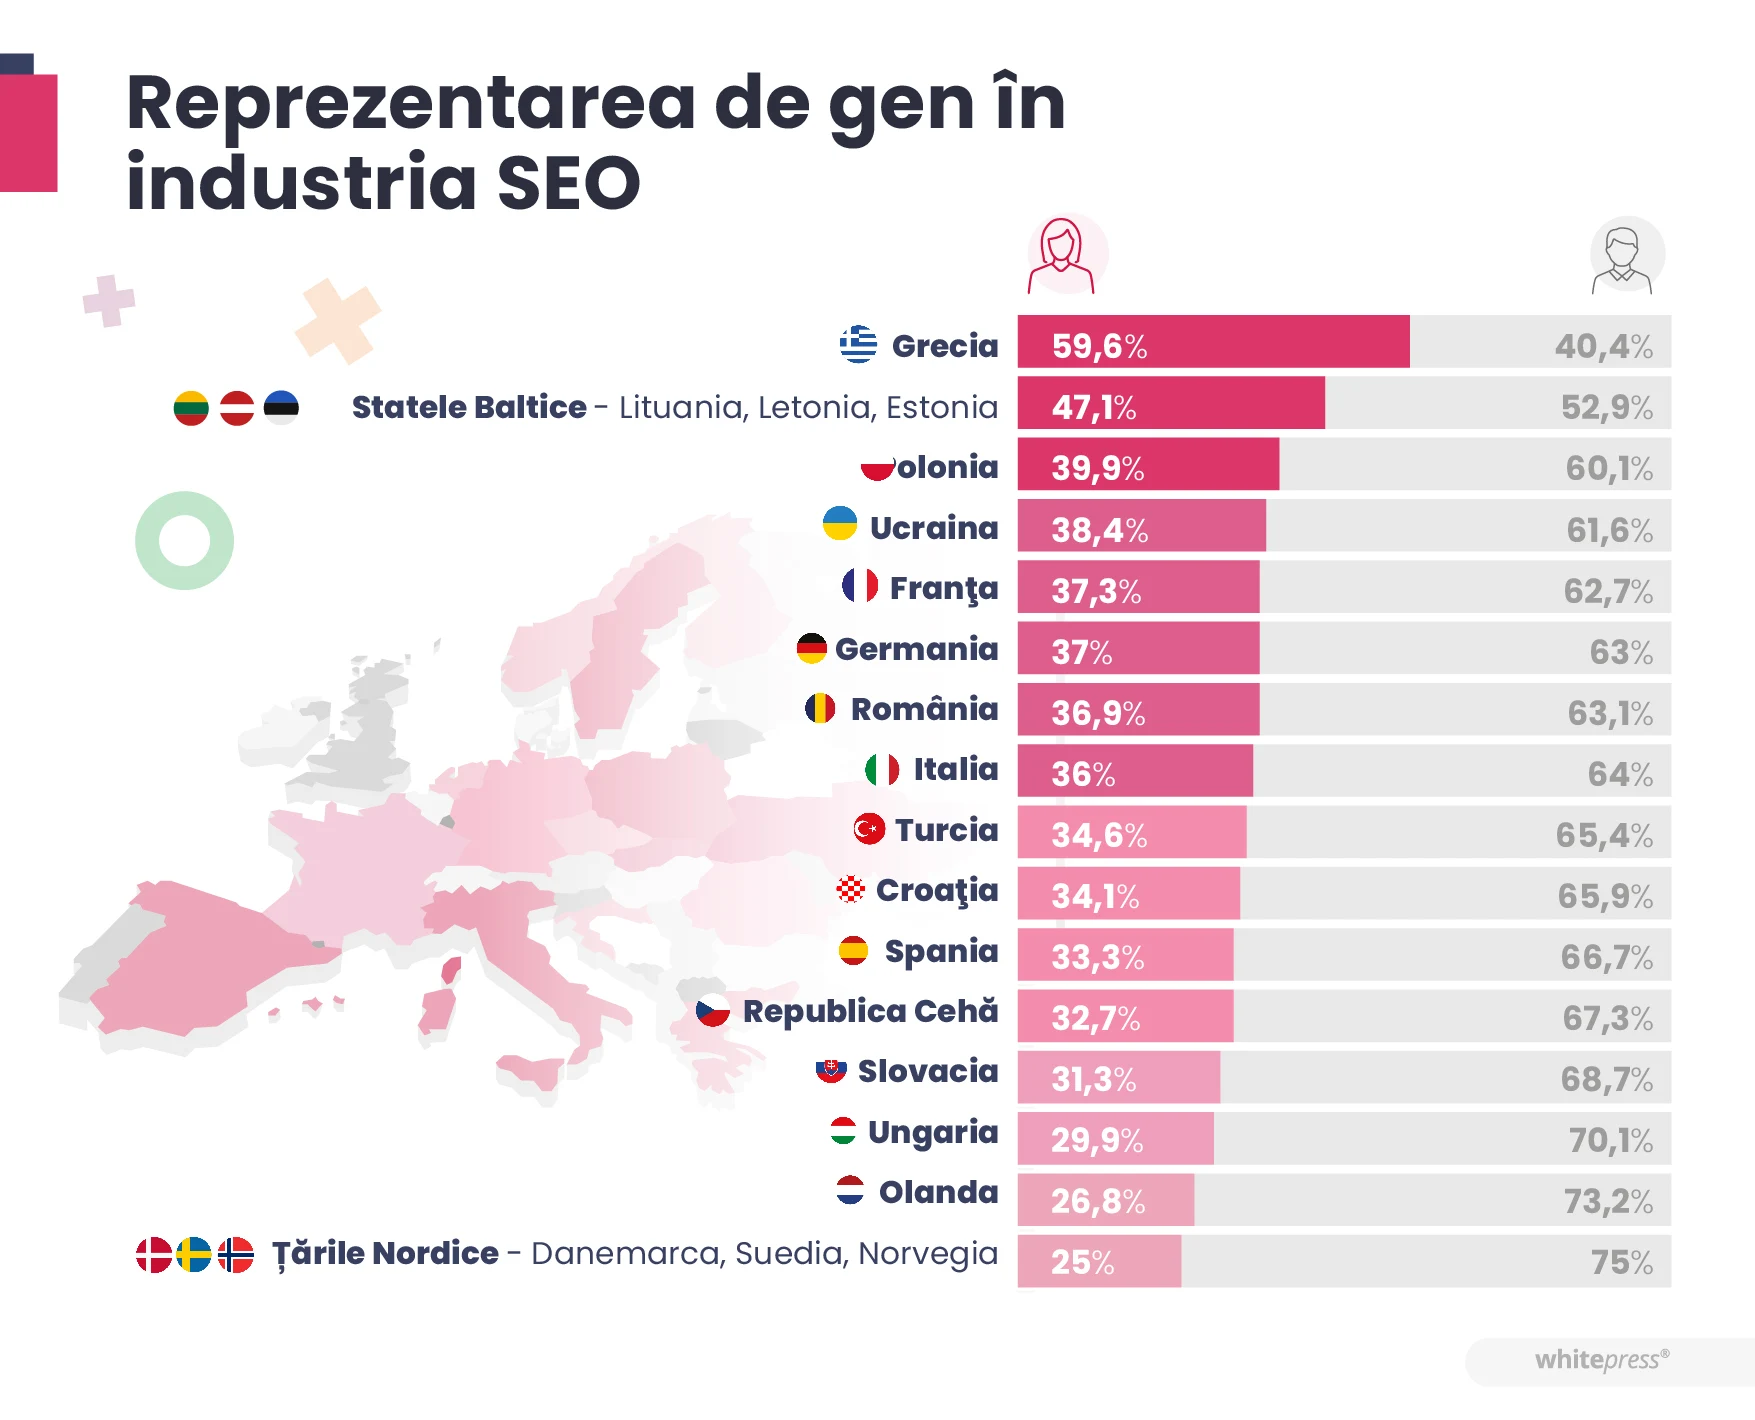 Reprezentarea de gen în industria SEO în funcție de țară